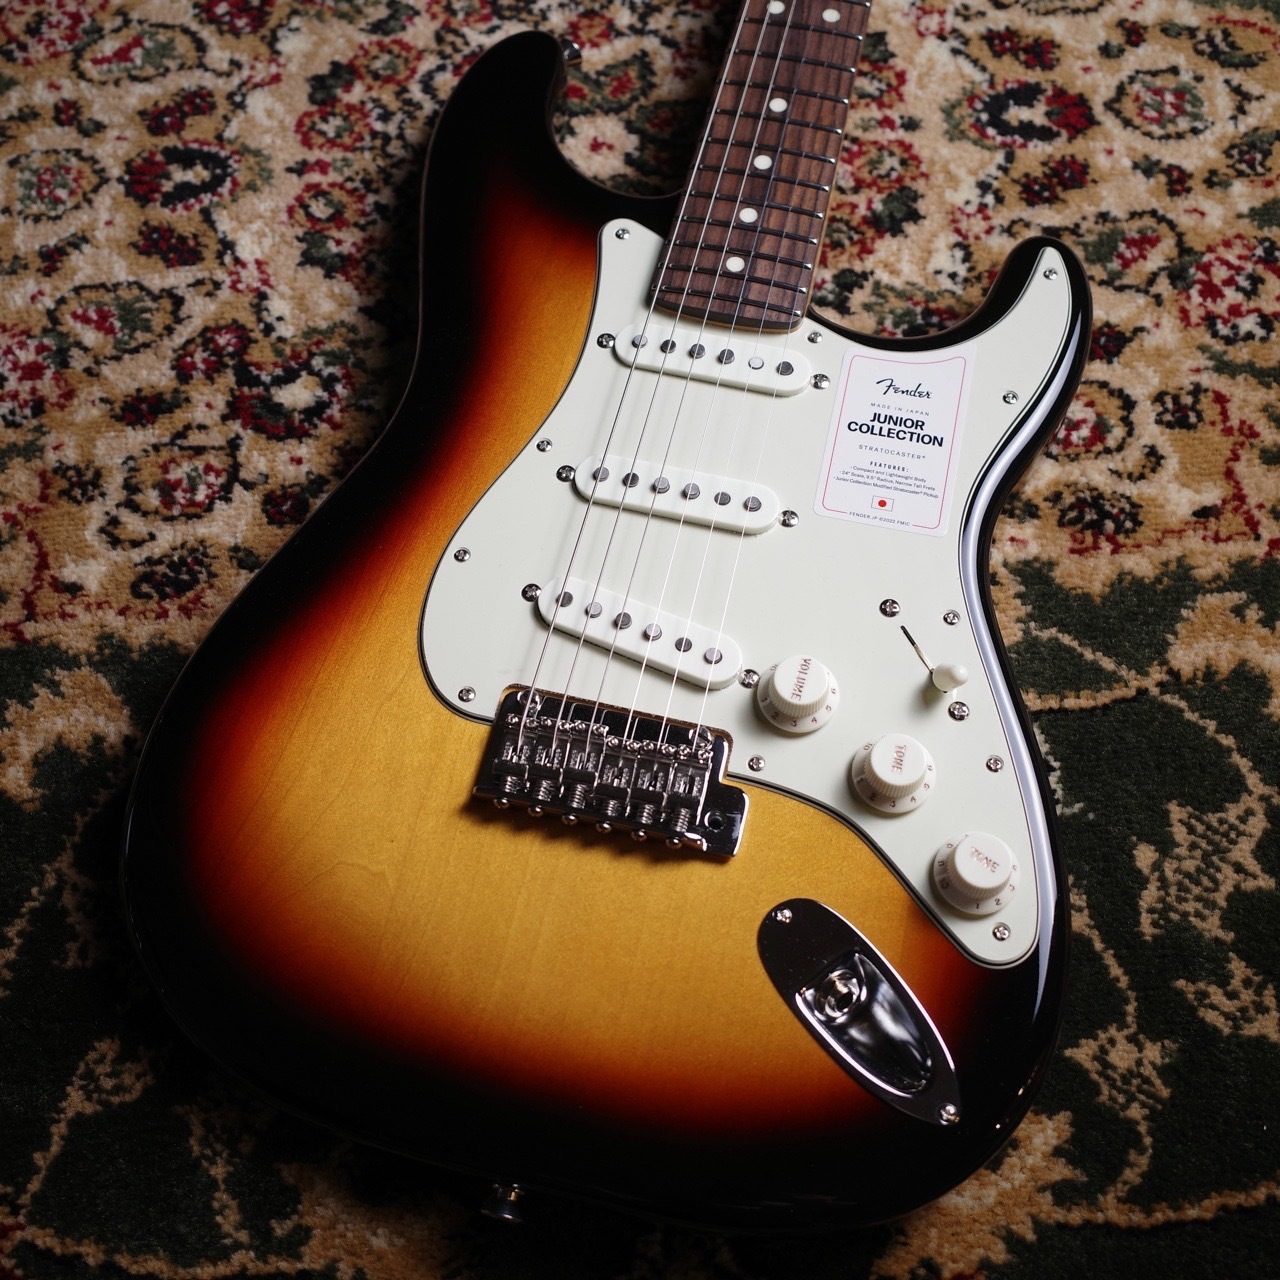 新品Fender Made in Japan Junior Collection Stratocaster エレキギター